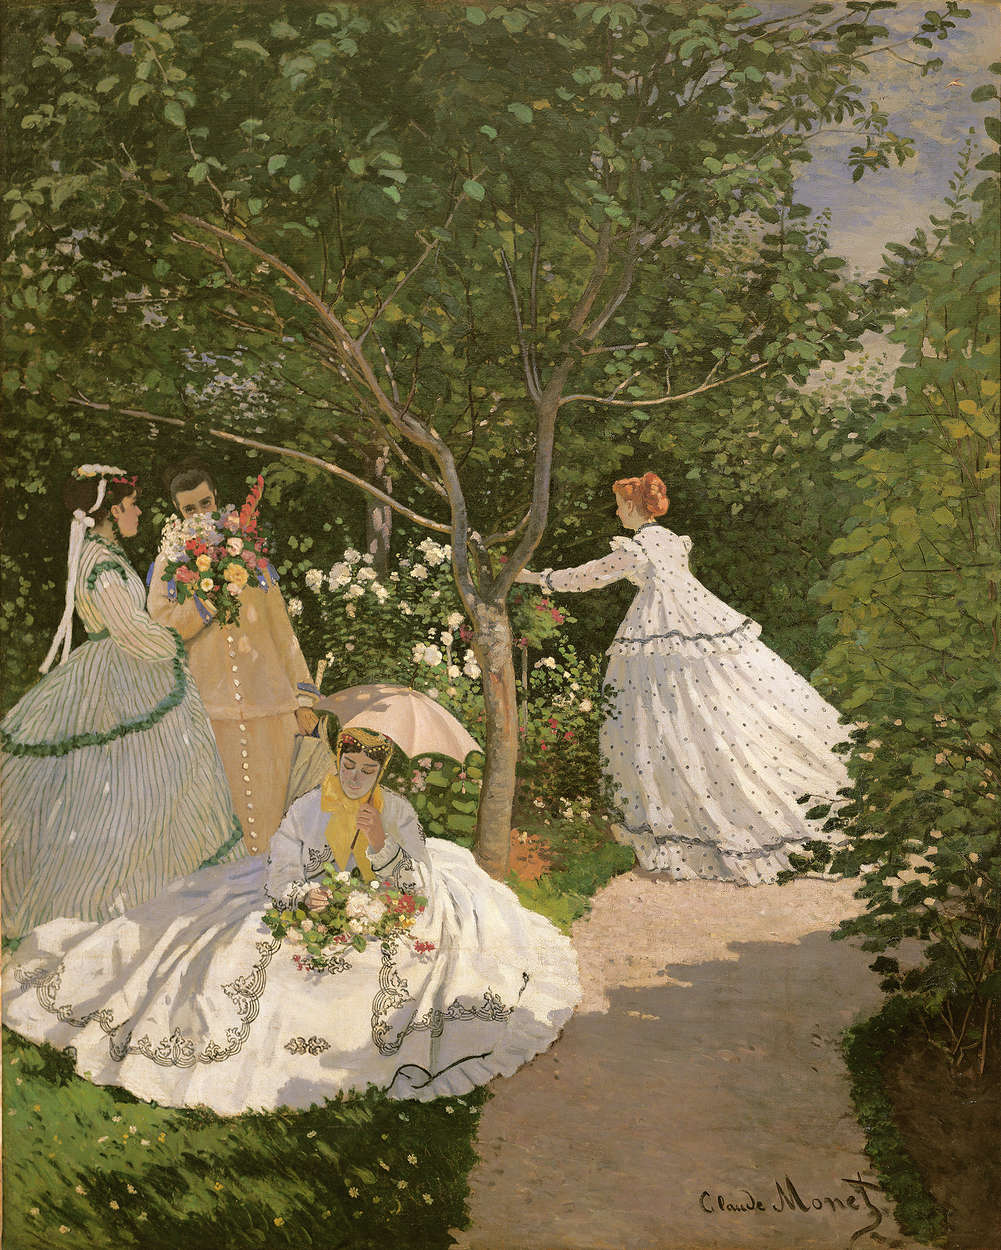             Muurschildering "Vrouwen in de tuin" van Claude Monet
        